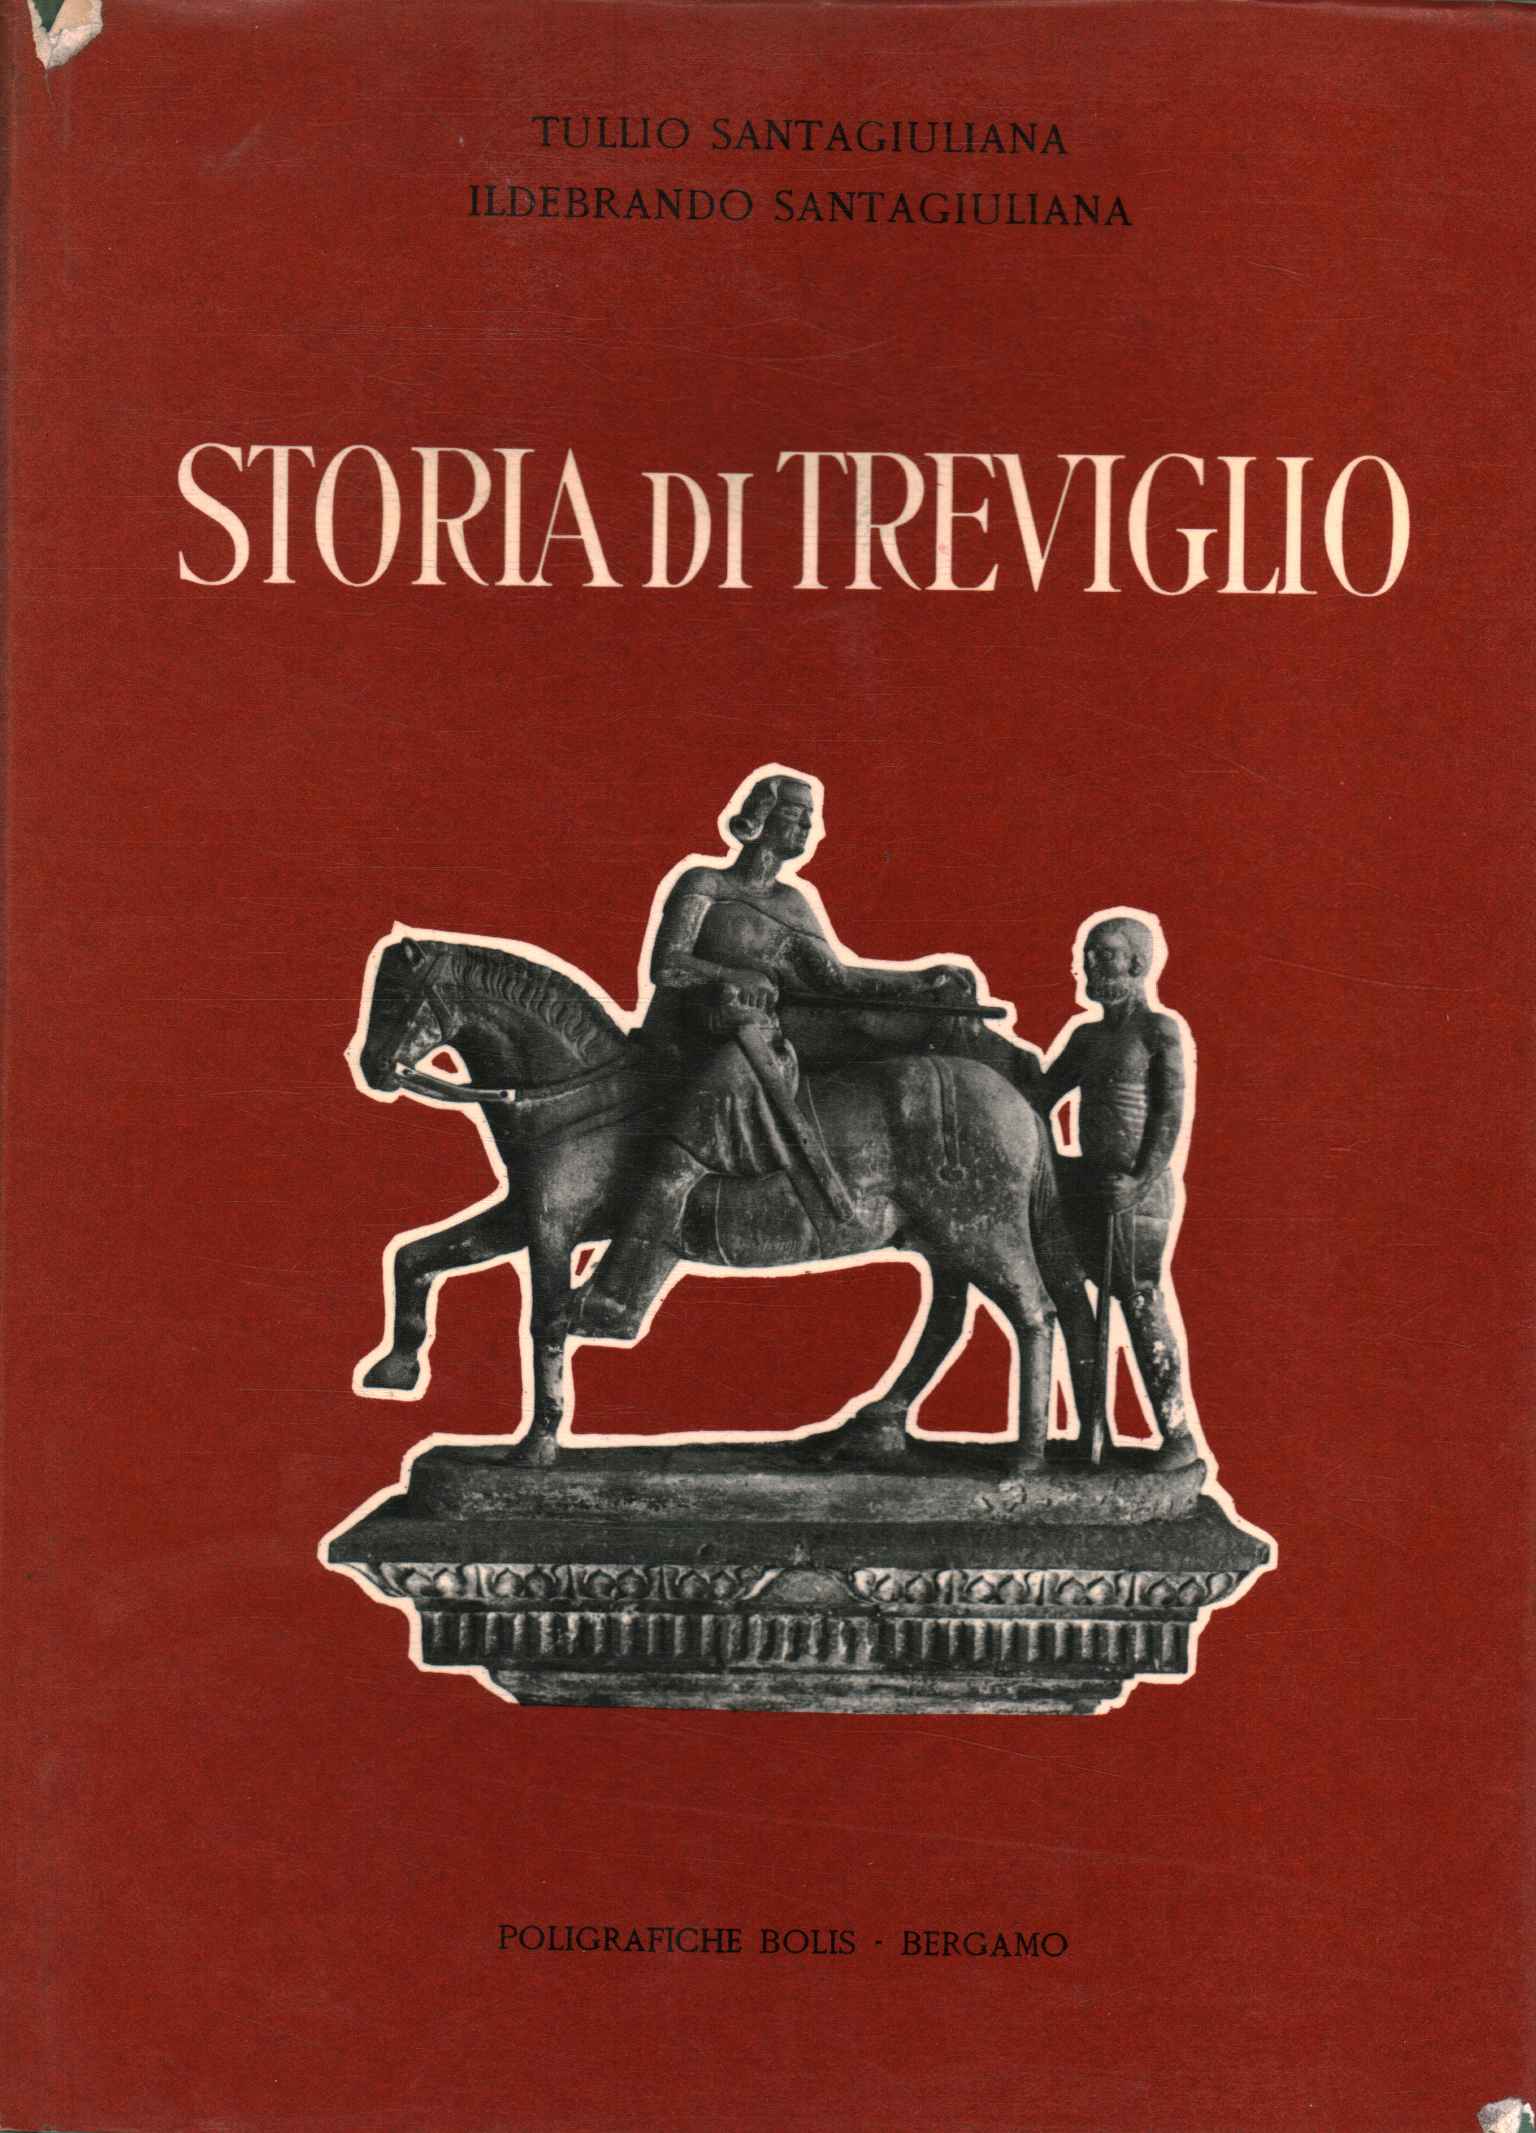 Historia de Treviglio